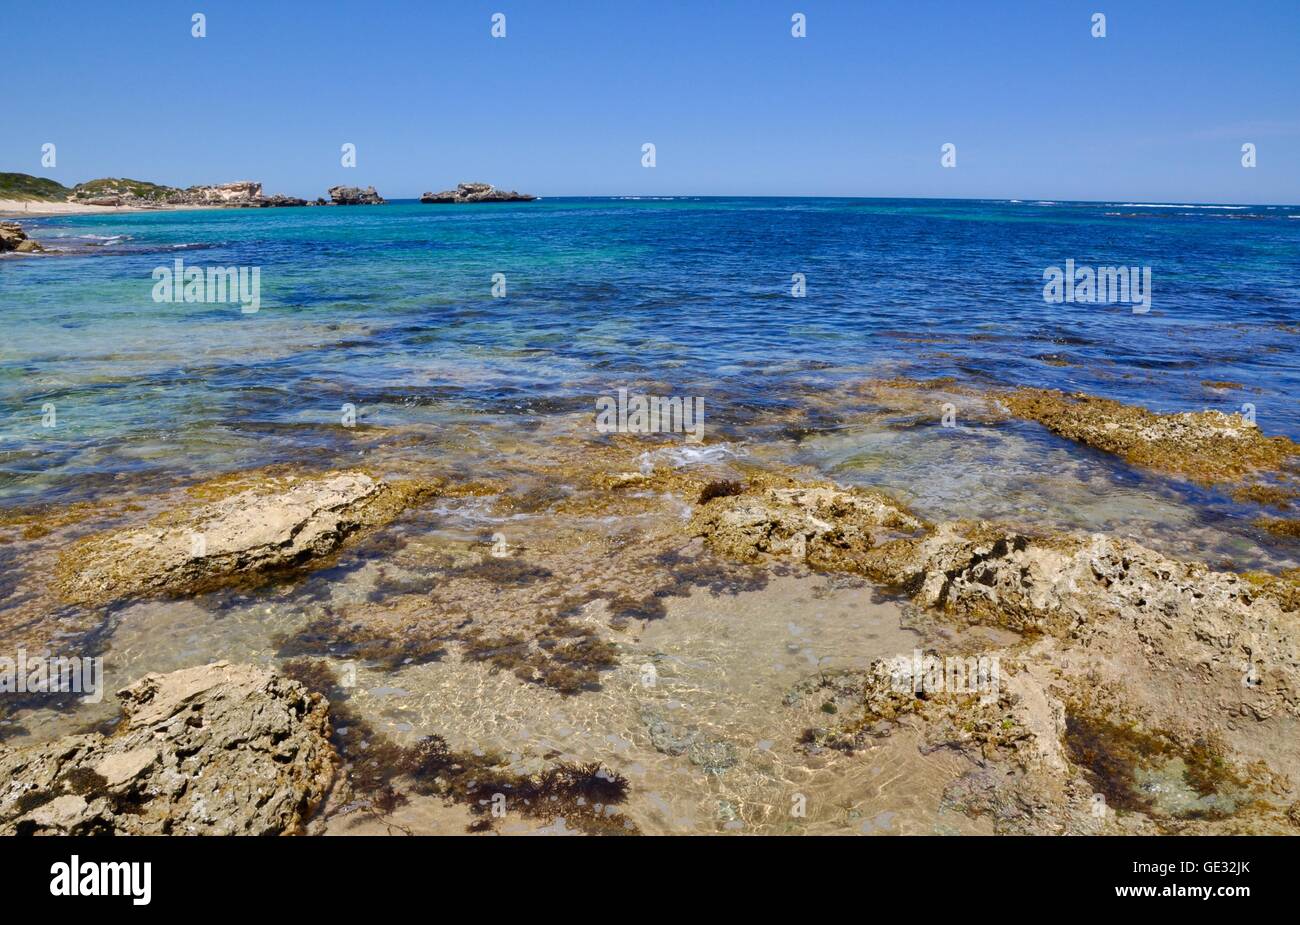 Strand-Riff mit Kalkfelsen und Unterwasser Vegetation am Punkt Peron mit dem indischen Ozean Seelandschaft in Western Australia. Stockfoto